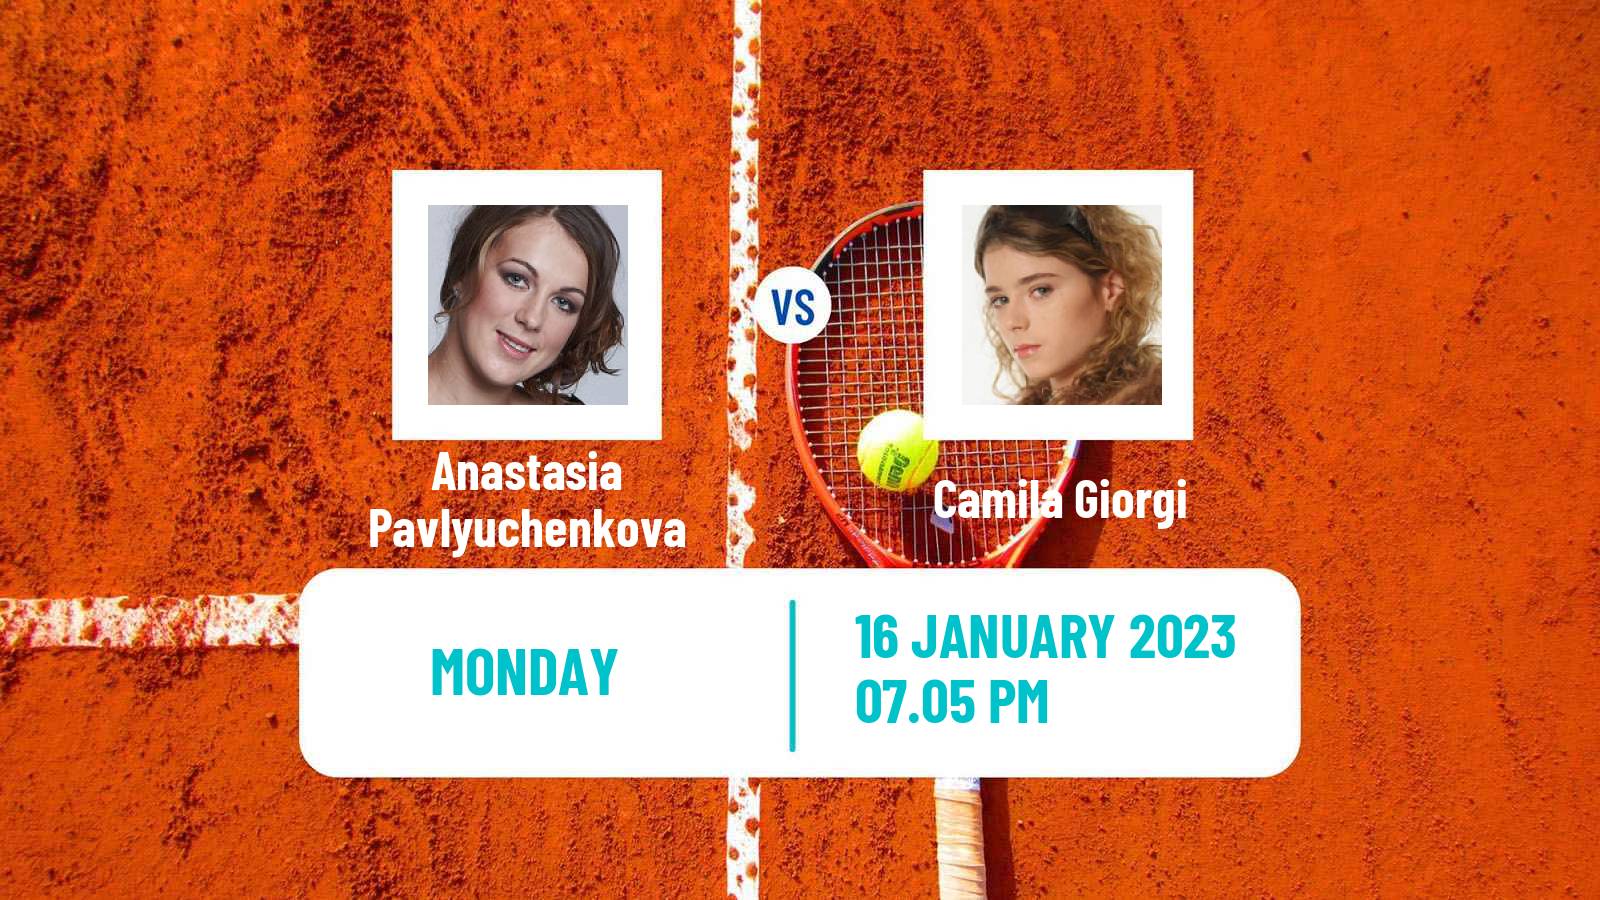 Tennis WTA Australian Open Anastasia Pavlyuchenkova - Camila Giorgi